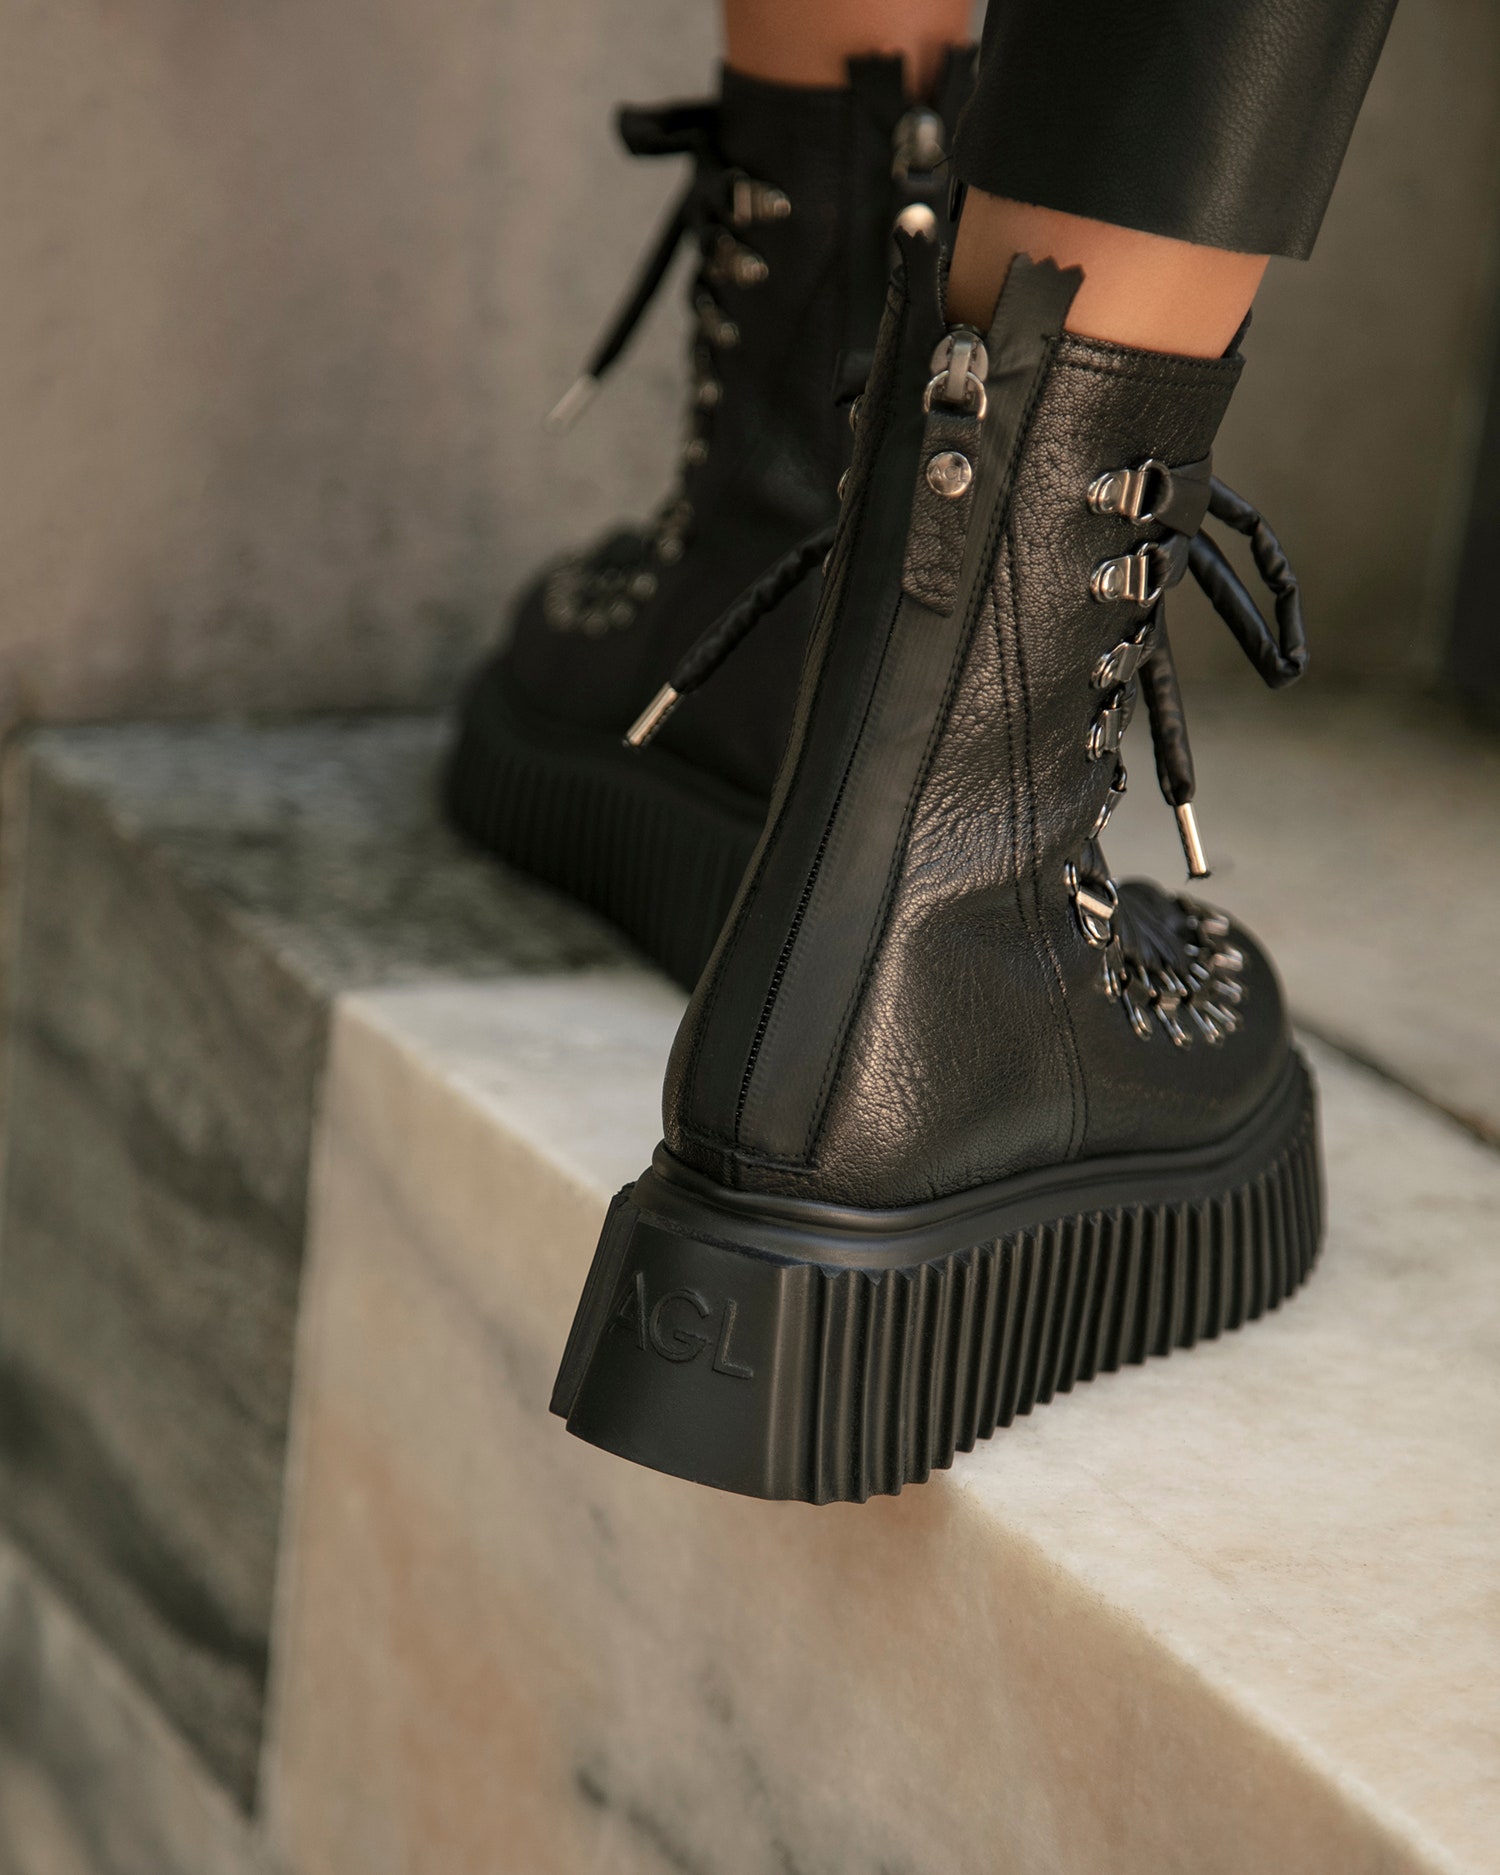 Новые брутальные высокие ботинки AGL на шнуровке в стиле гранж — новое решение итальянского бренда для базового гардероба, которое подойдет как на каждый день, так и для особого случая